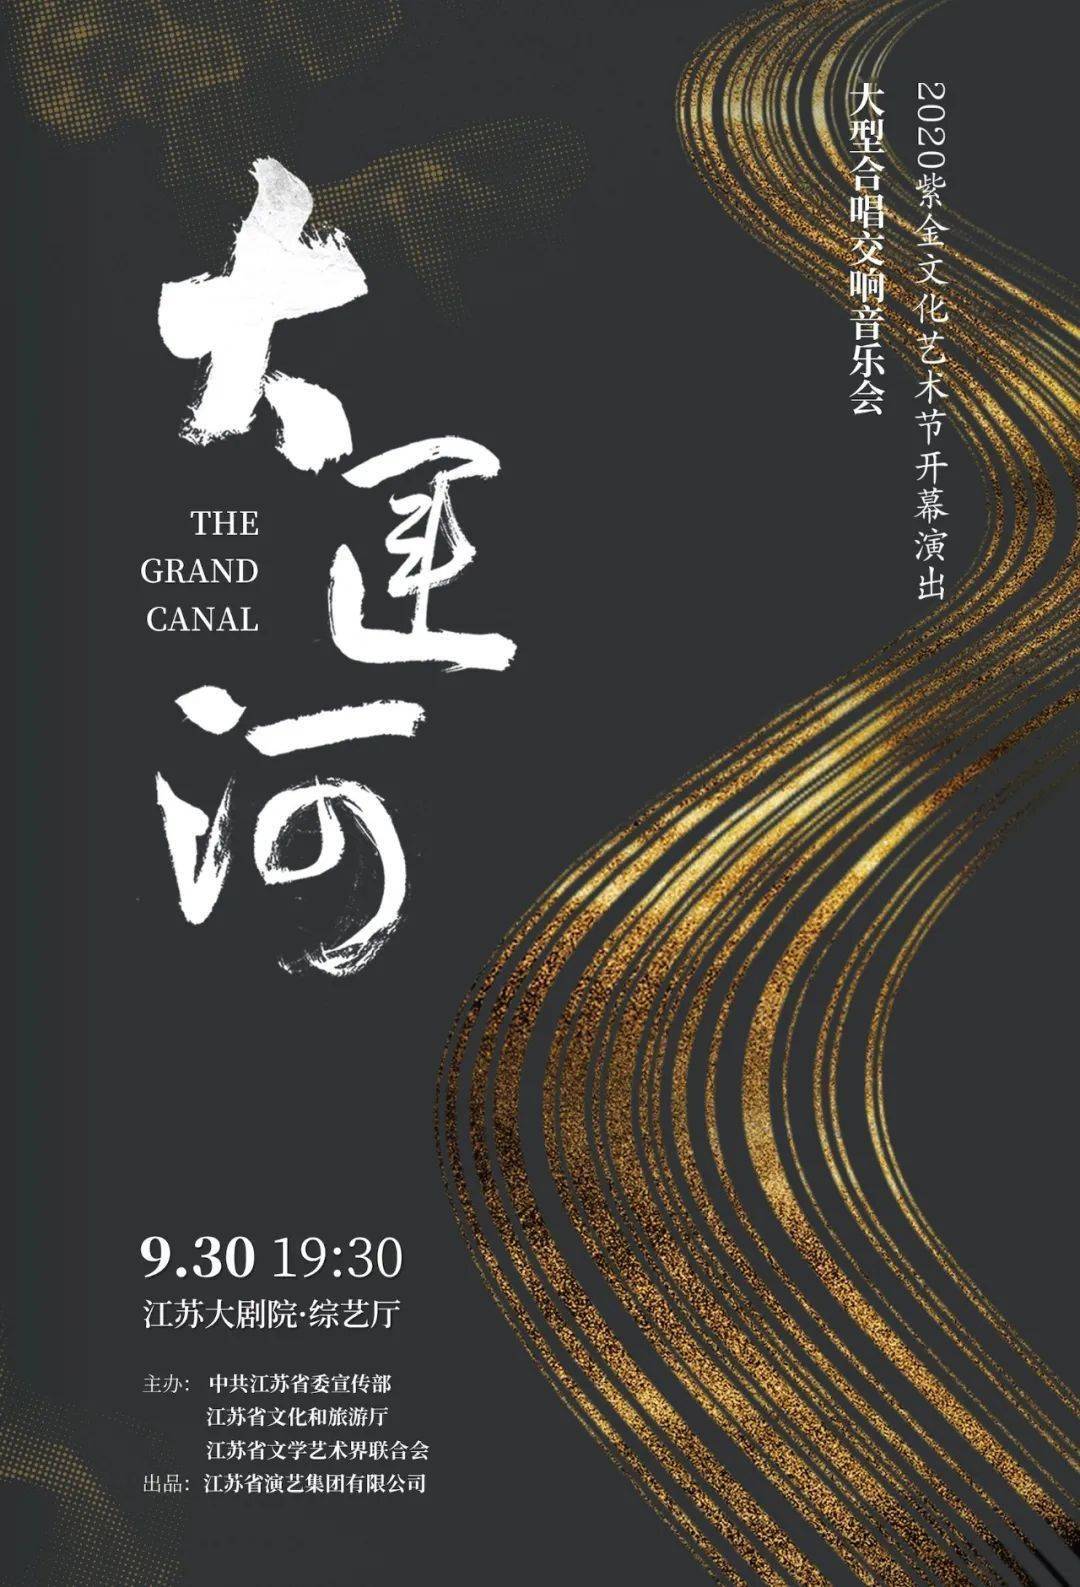 大型合唱交响音乐会《大运河》2020紫金文化艺术节开幕演出你能想象